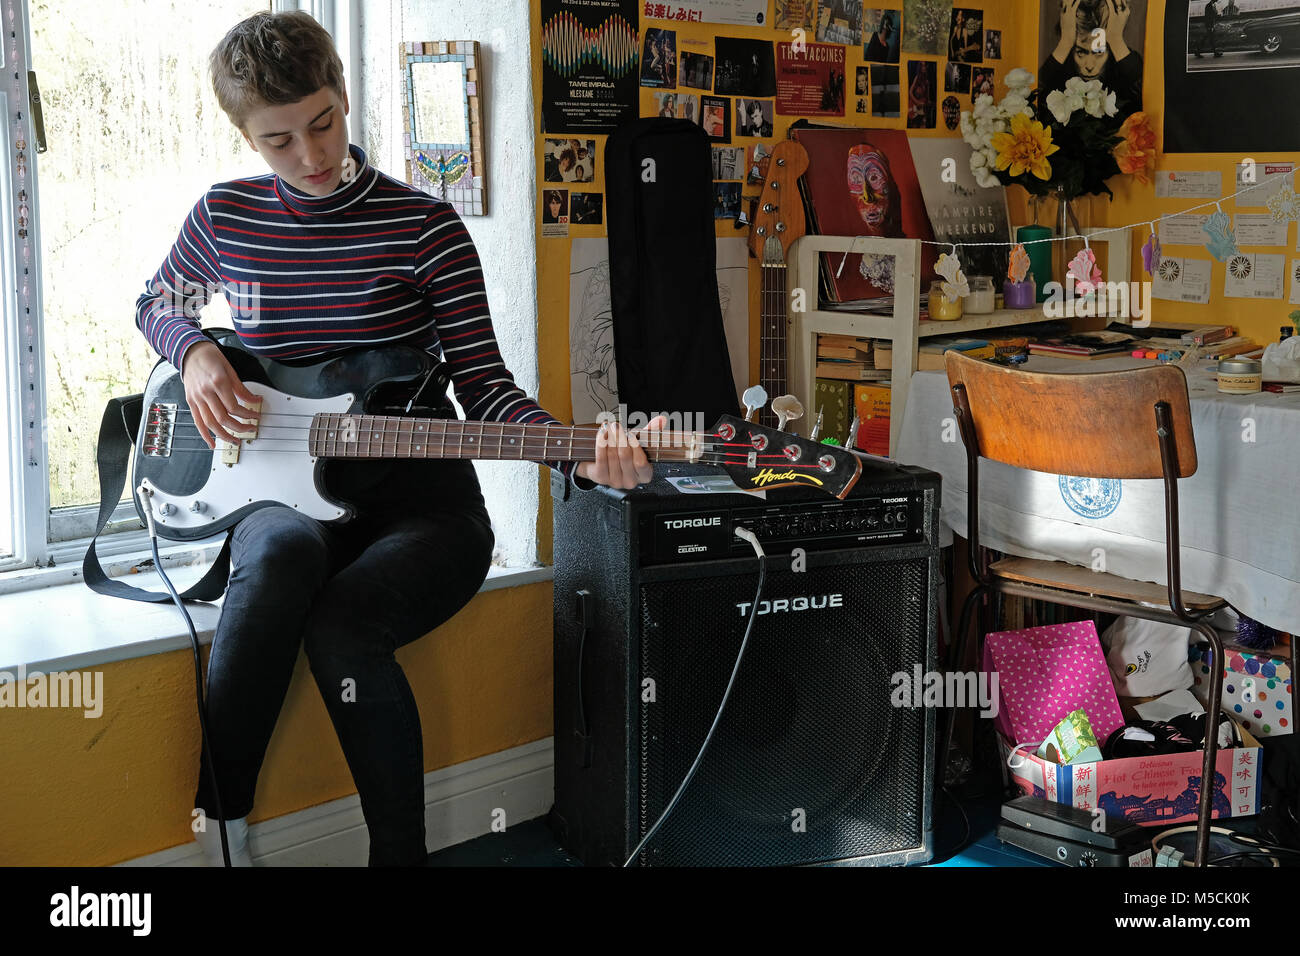 Adolescente practicando su instrumento en su dormitorio. Foto de stock